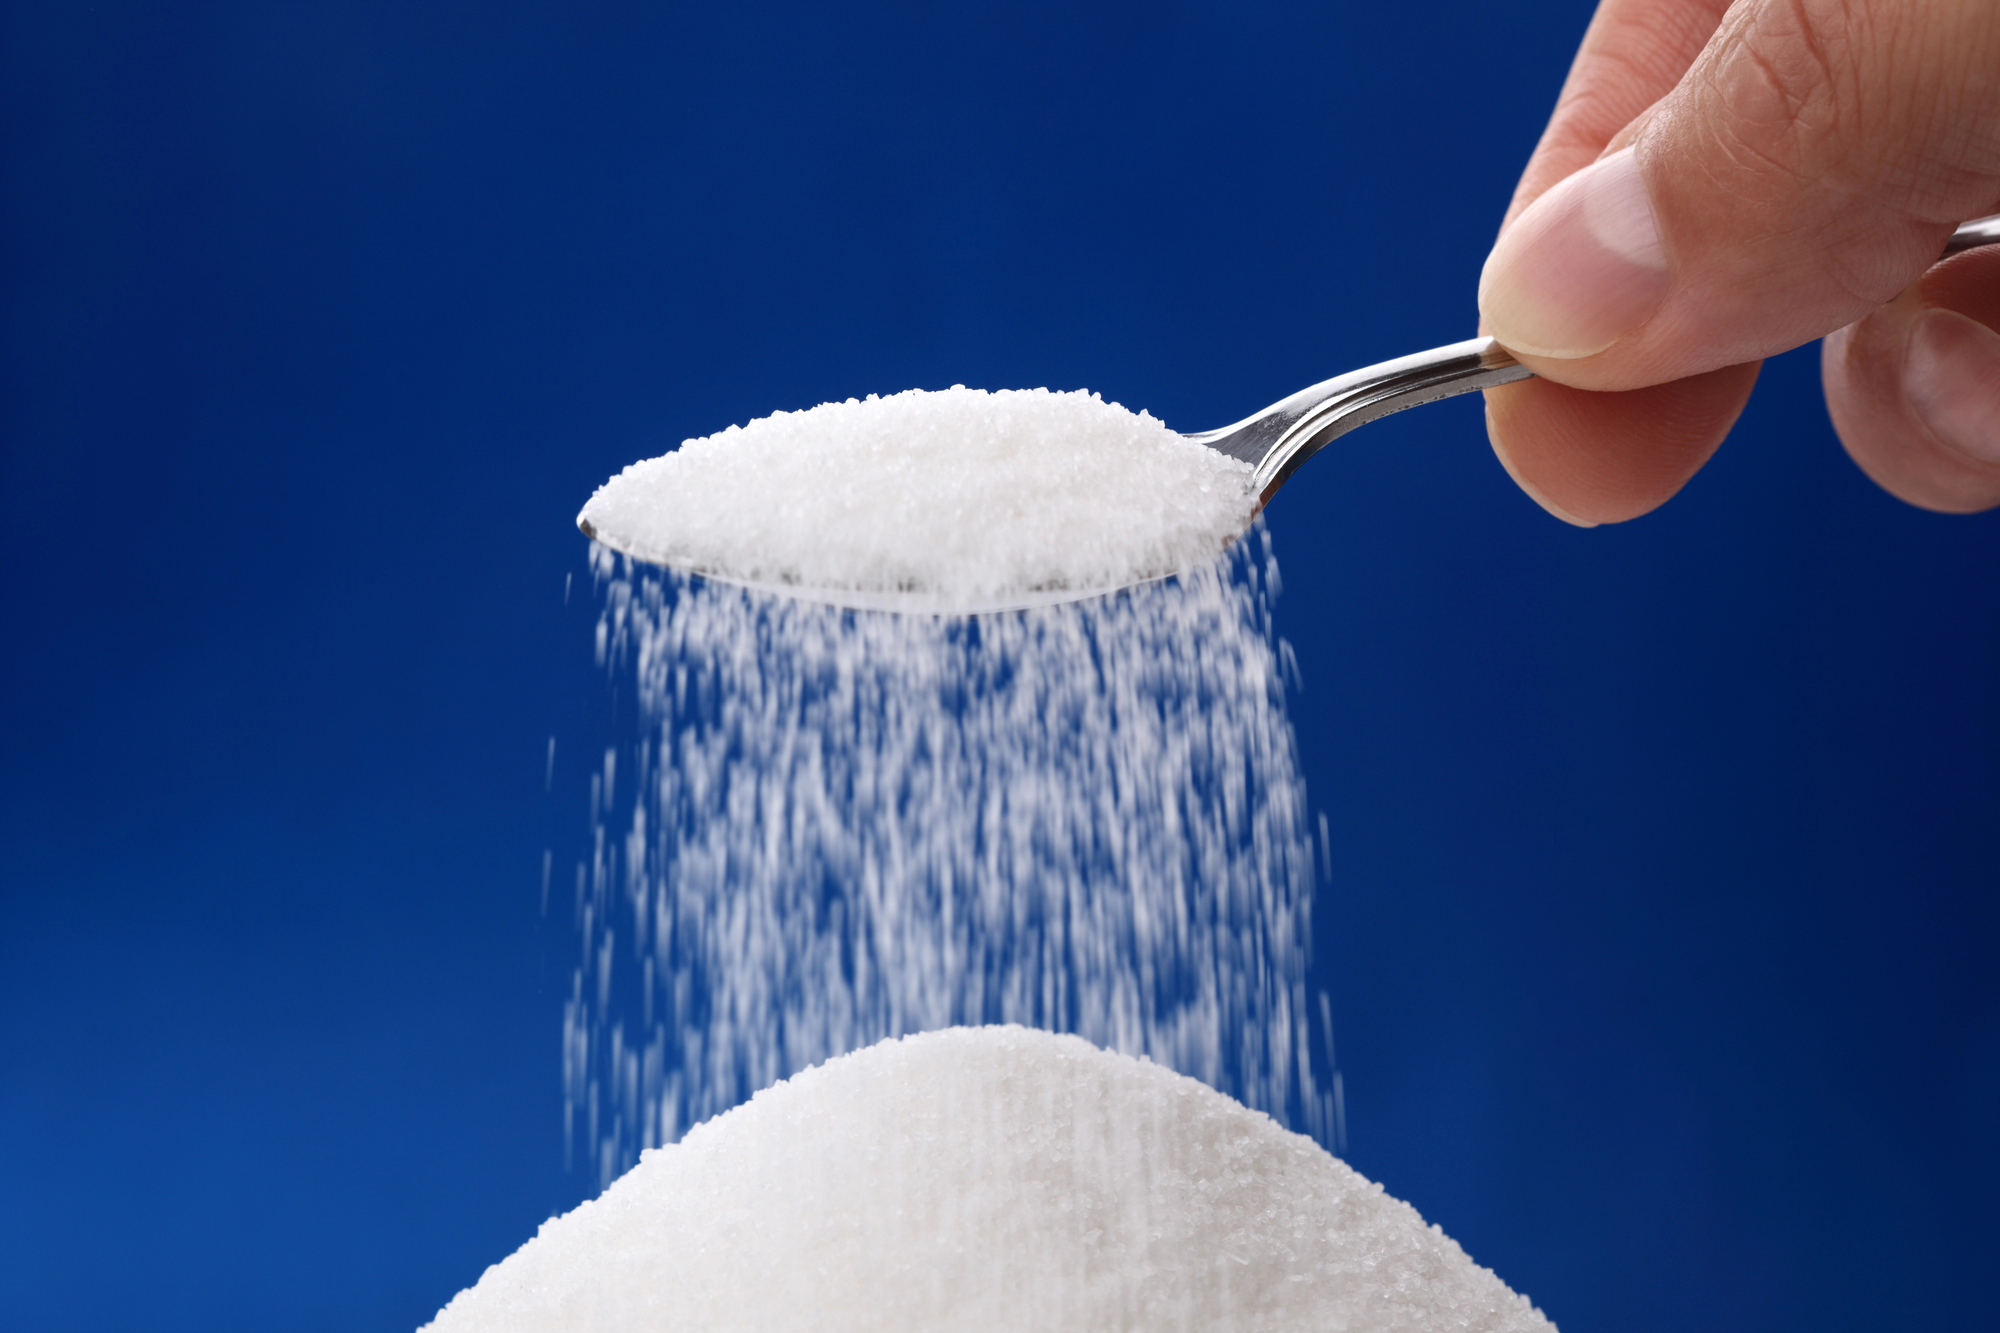 Colher com açúcar formando um monte do produto refinado